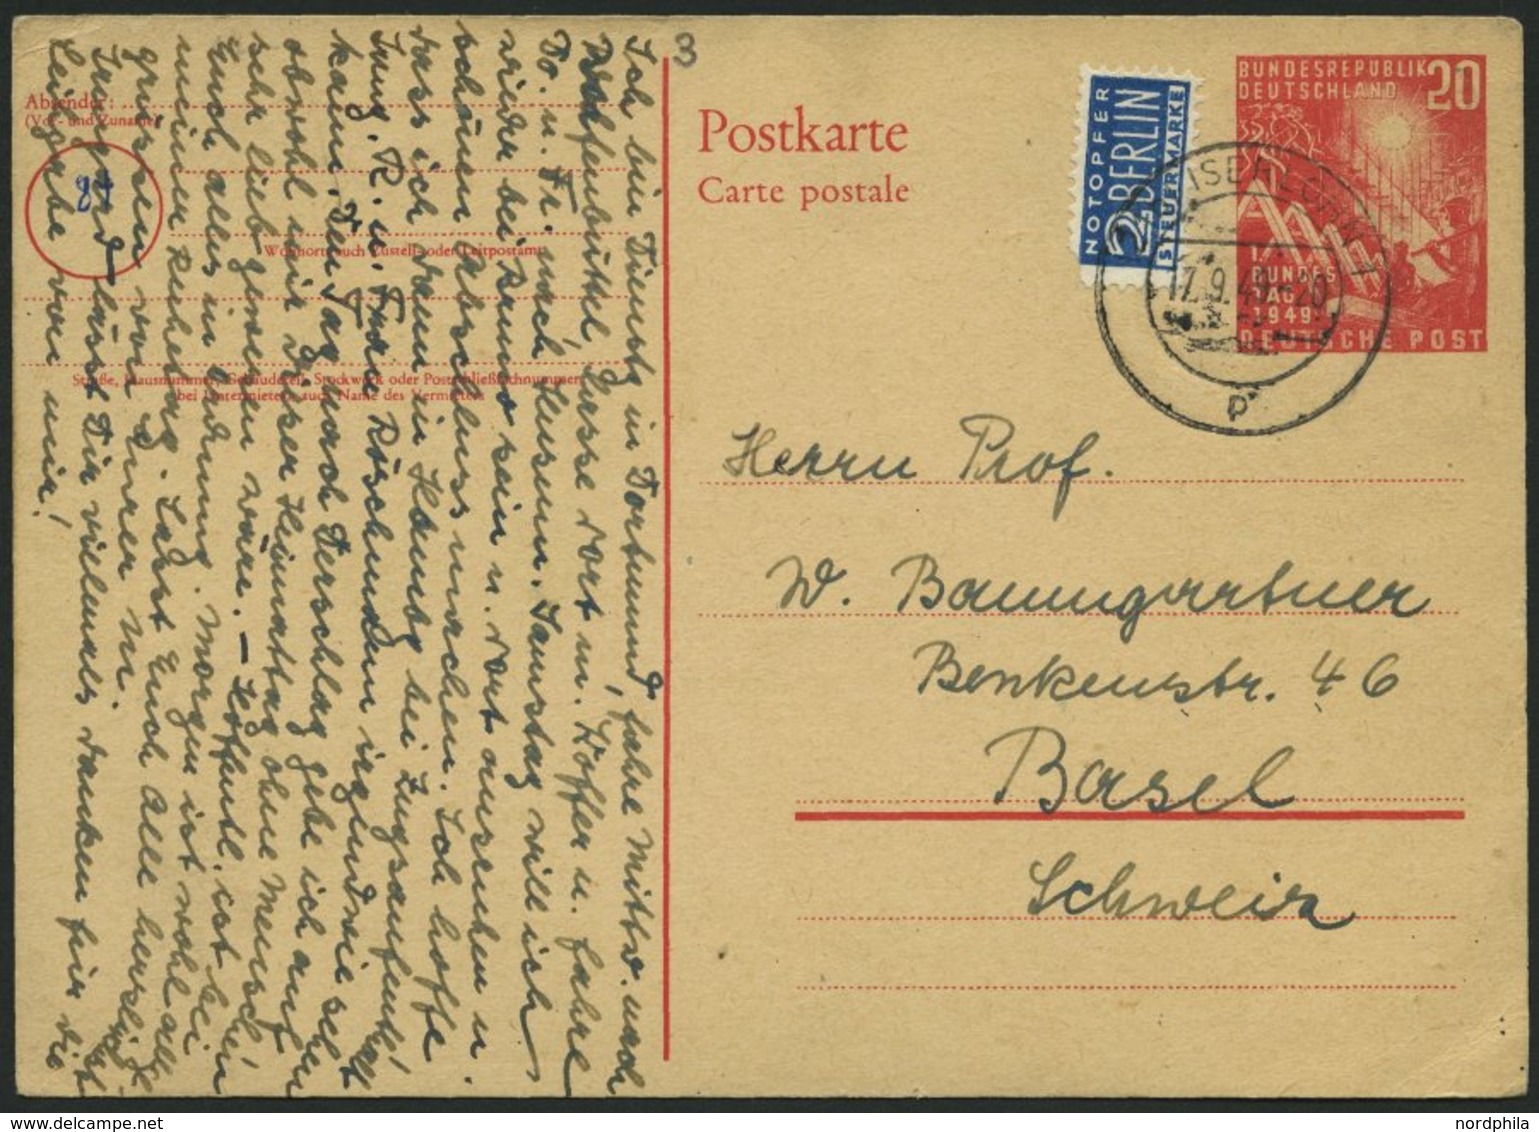 GANZSACHEN PSo 2 BRIEF, 1949, 20 Pf. Bundestag, Bedarfskarte In Die Schweiz, Pracht, Mi. 150.- - Sammlungen